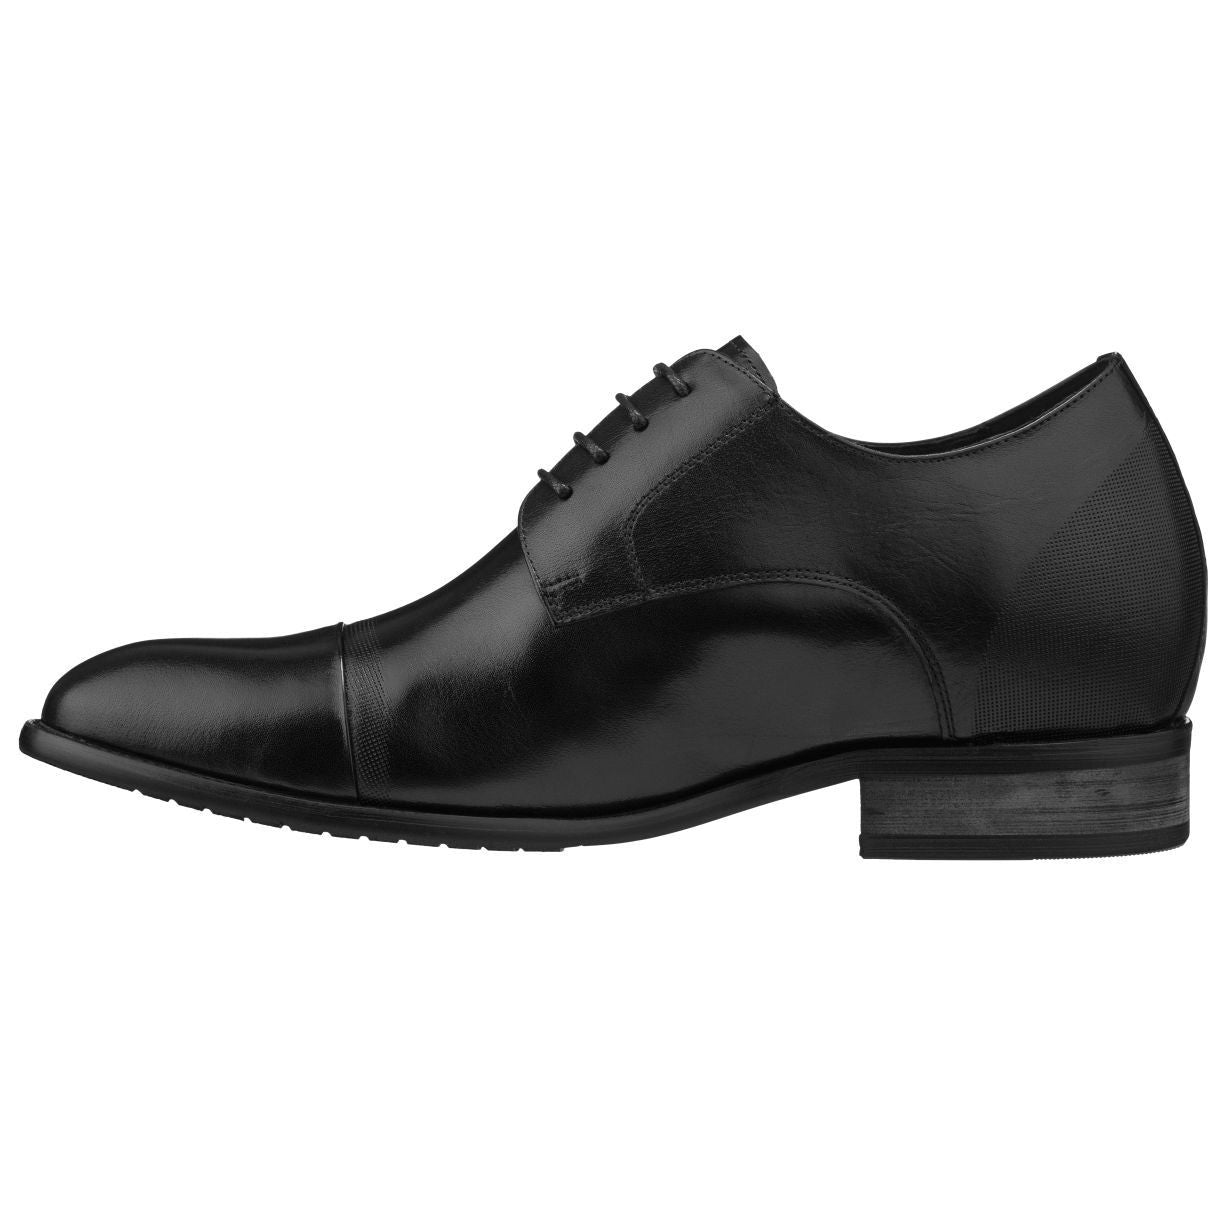 CALTO Black Formal Dress Shoes - TallMenShoes.com – Tallmenshoes.com